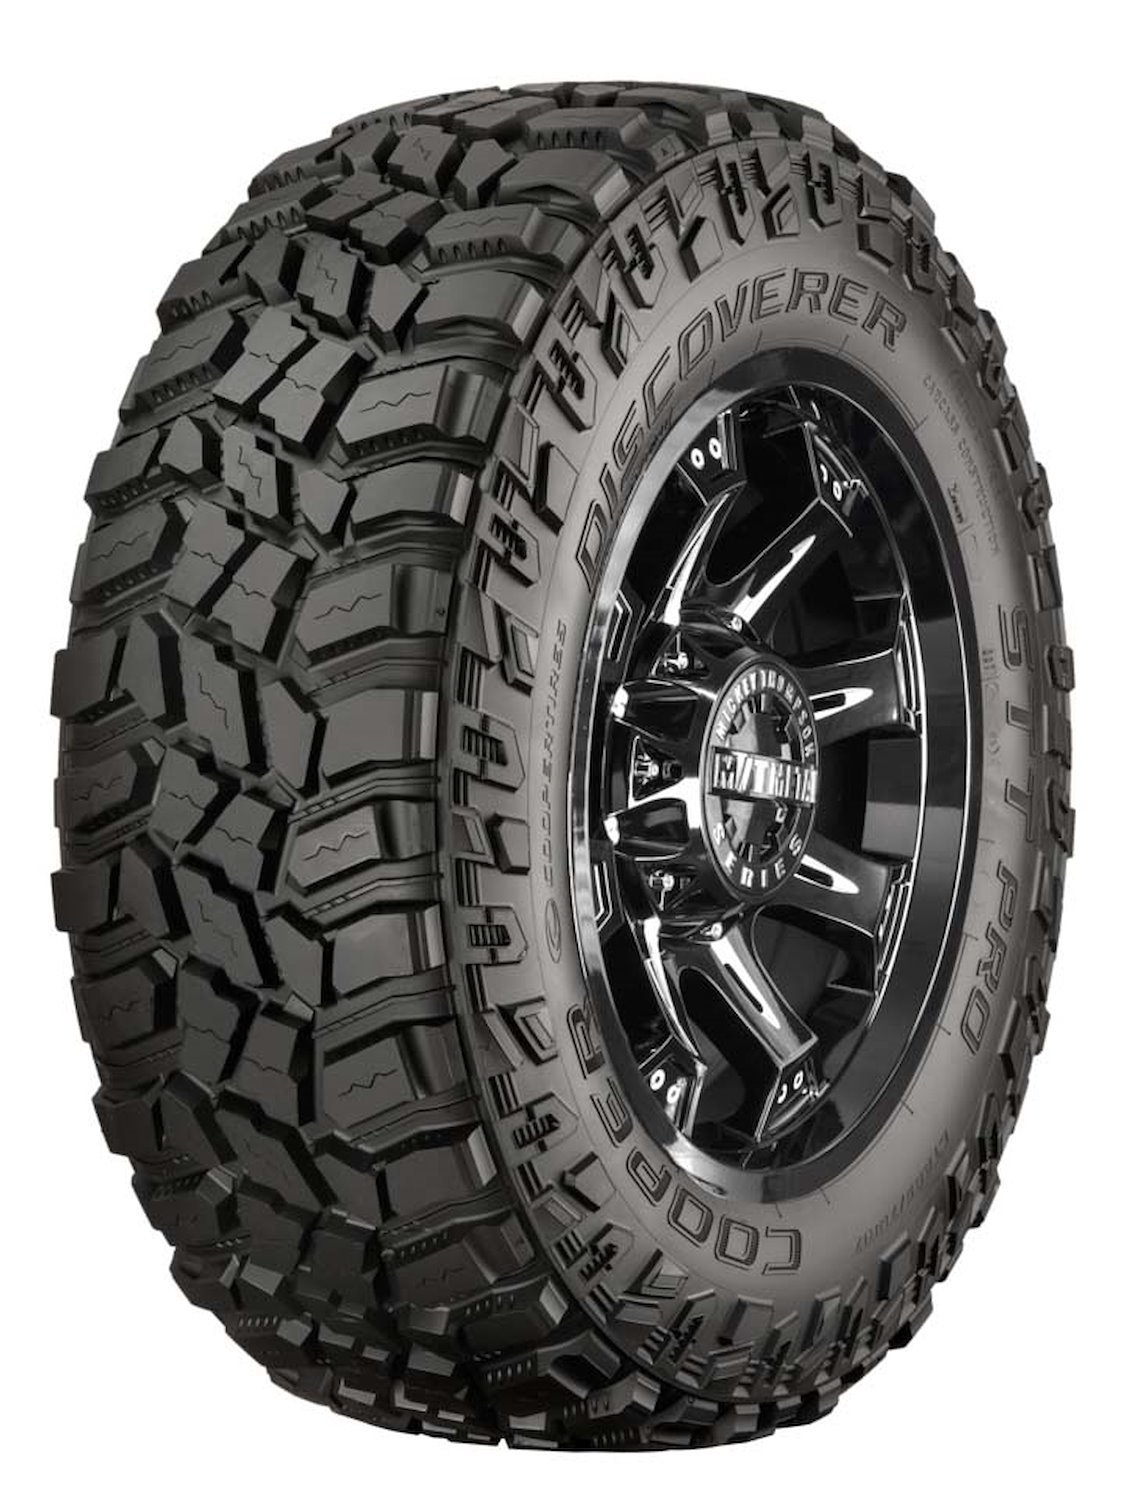 Discoverer STT PRO All-Terrain Tire, 35X12.50R20LT